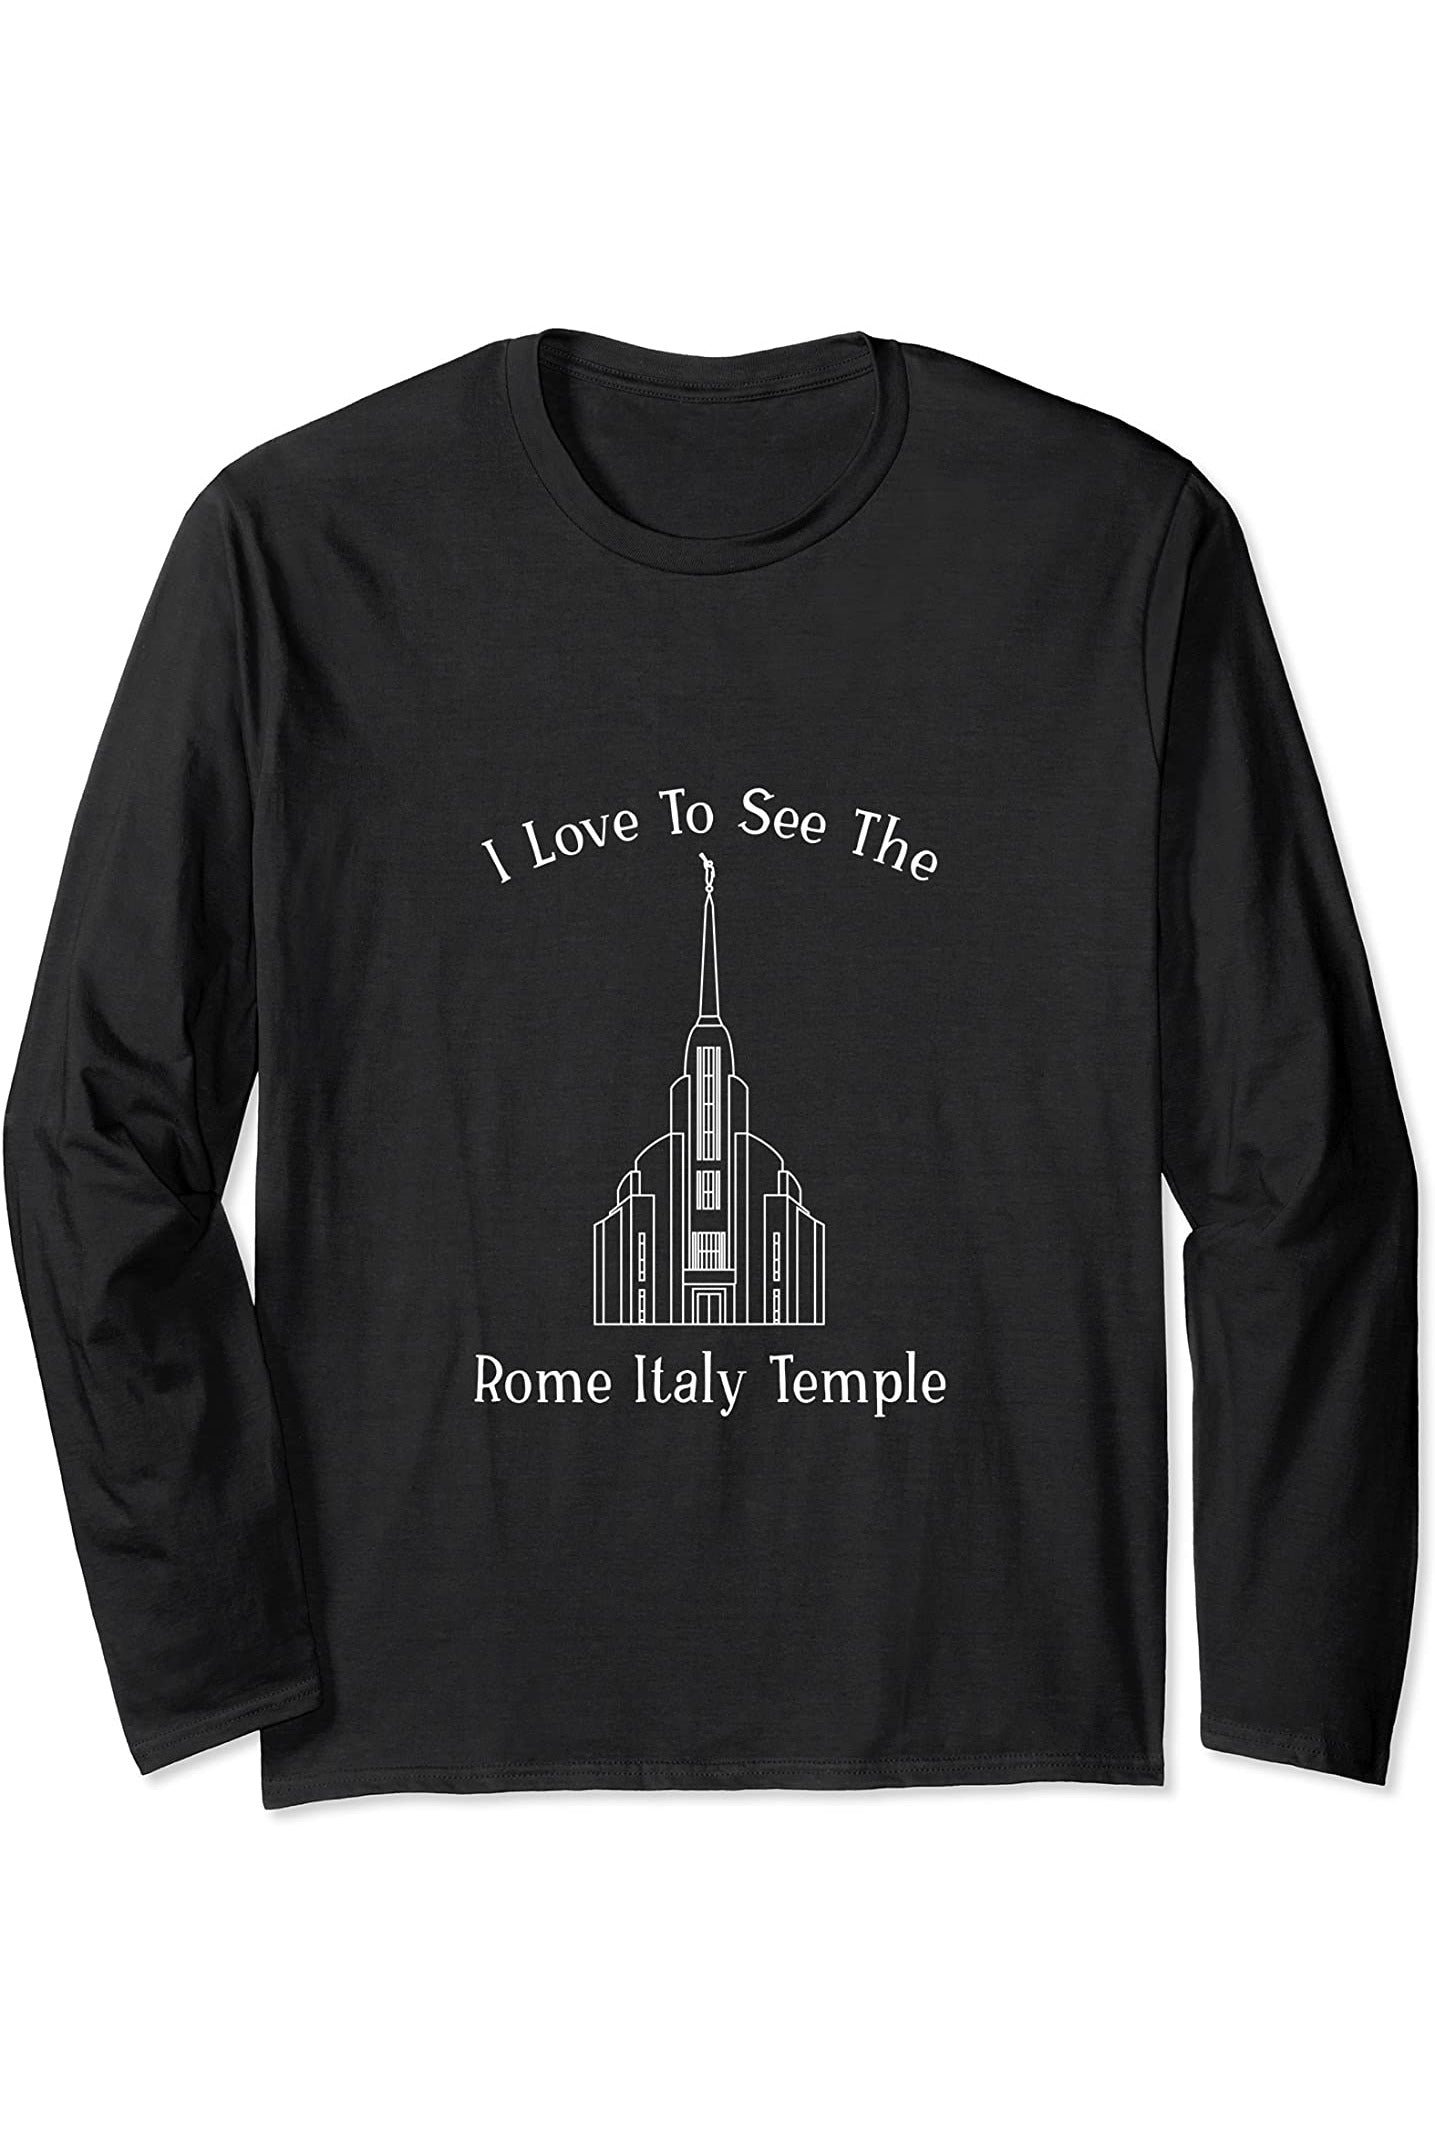 Roma Italia Tempio, amo vedere il mio tempio, felice Long Sleeve T-Shirt